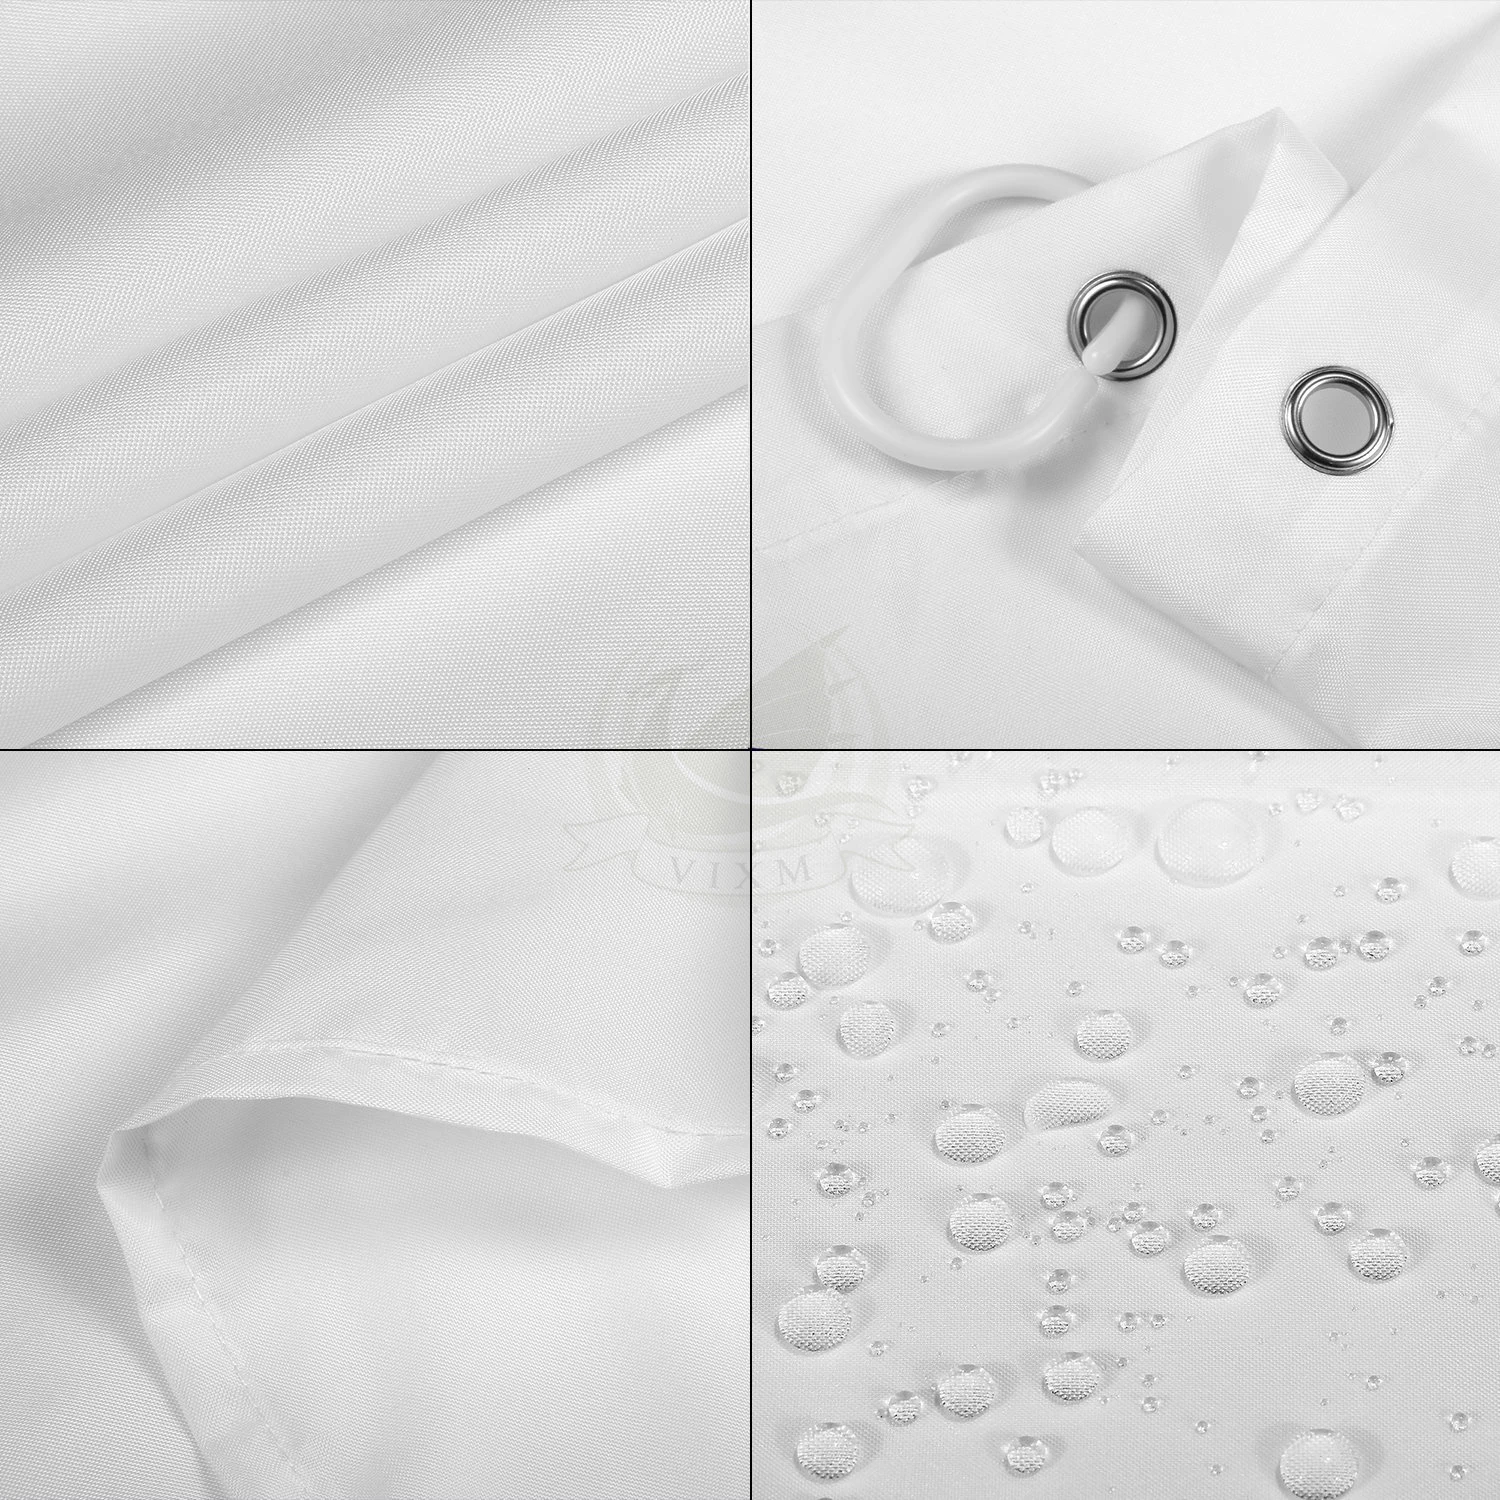 Vixm мраморная занавеска для душа мраморная поверхность узор с треснутыми линиями и туманными полосками художественный дисплей ткань занавеска для ванной s